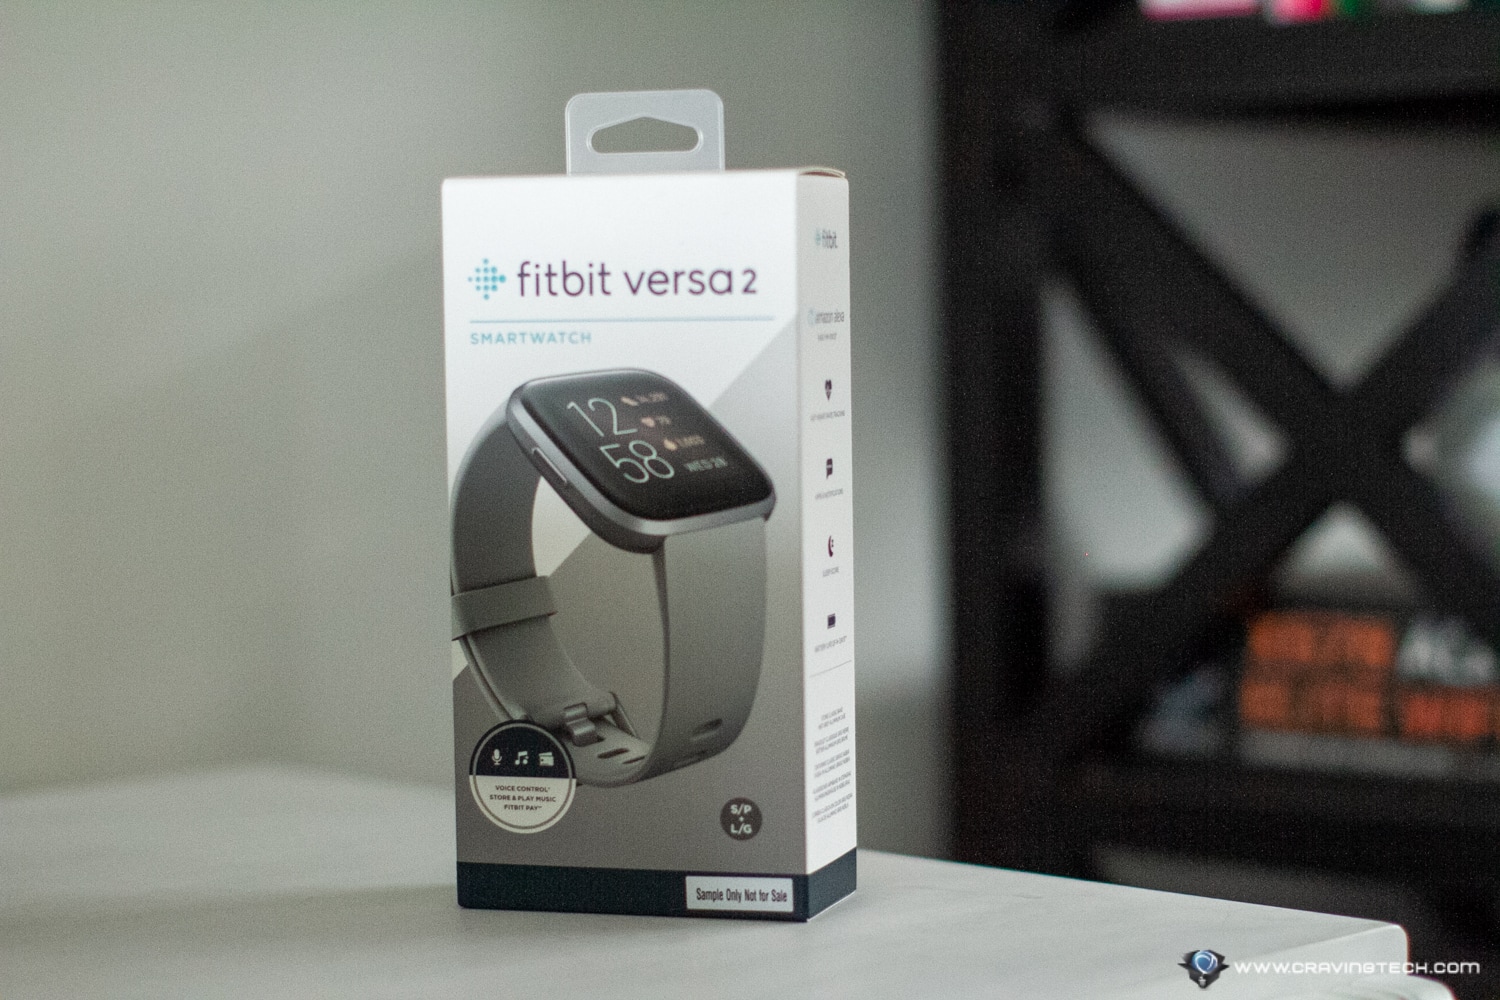 Fitbit Versa 2 packaging